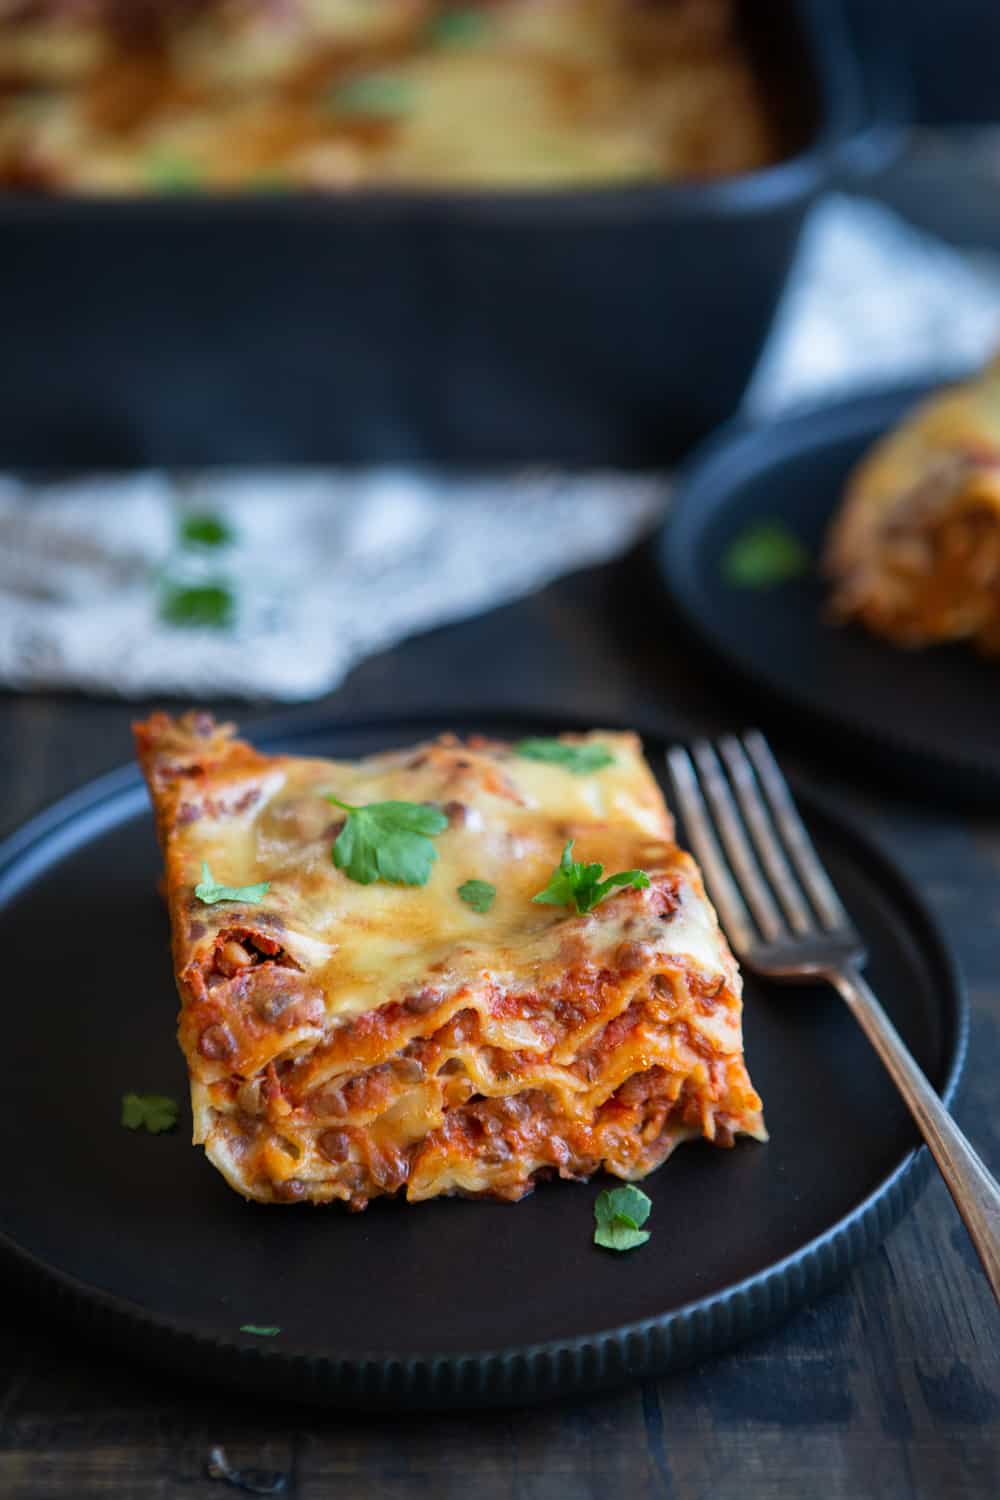 Slice of lasagna on plate.